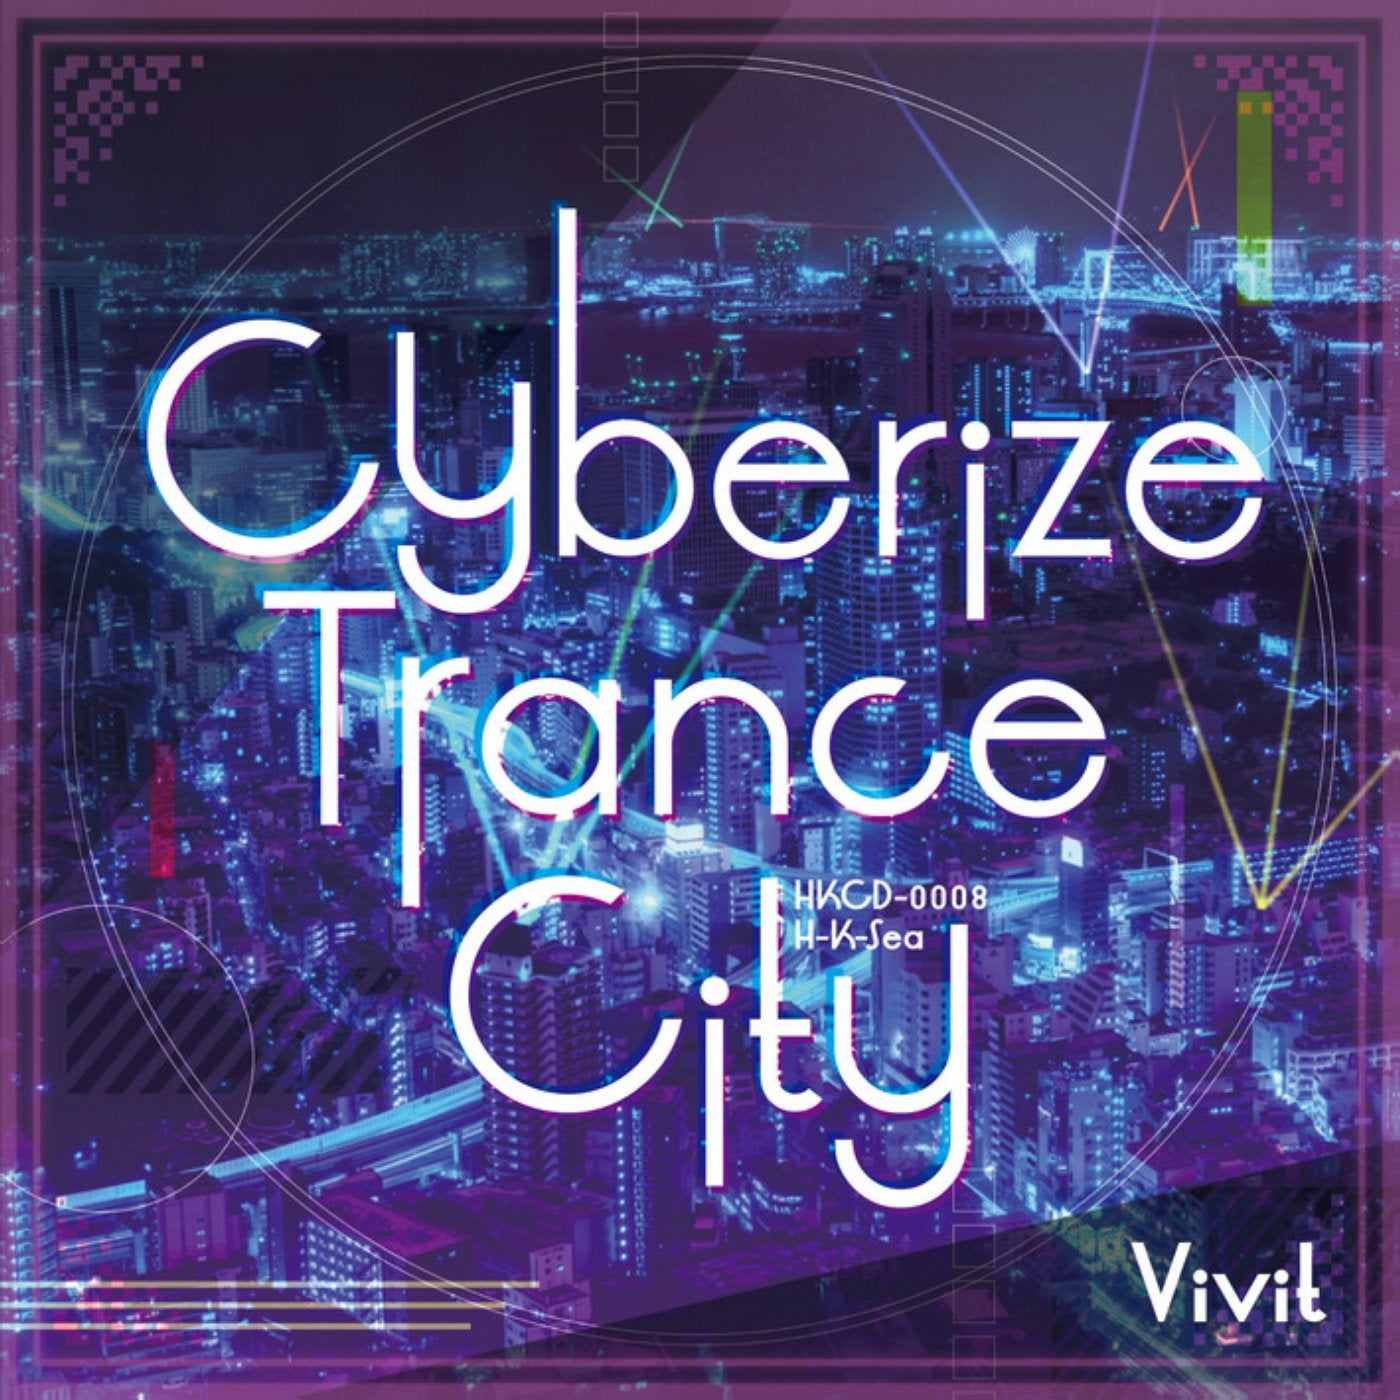 Cyberize Trance City